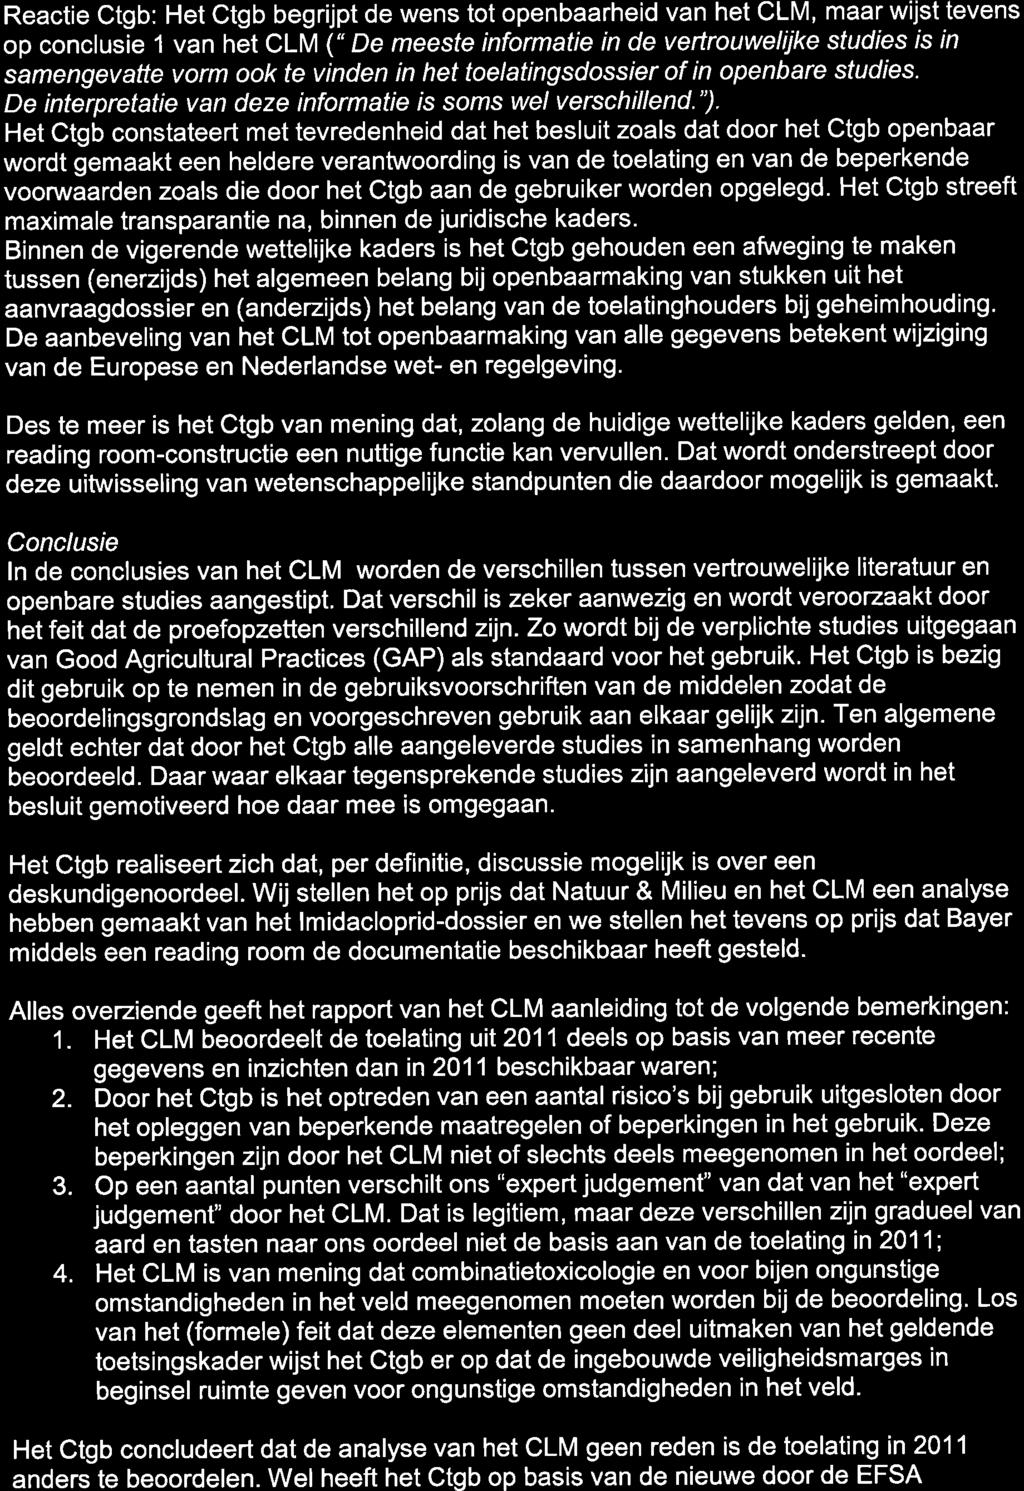 Reactie Ctgb: Het Ctgb begrijpt de wens tot openbaarheid van het CLM, maar wijst tevens op conclusie 1 van het CLM (" De meeste informatie in de veftrouweliike sfudies rs rn samengevatte vorm ook te